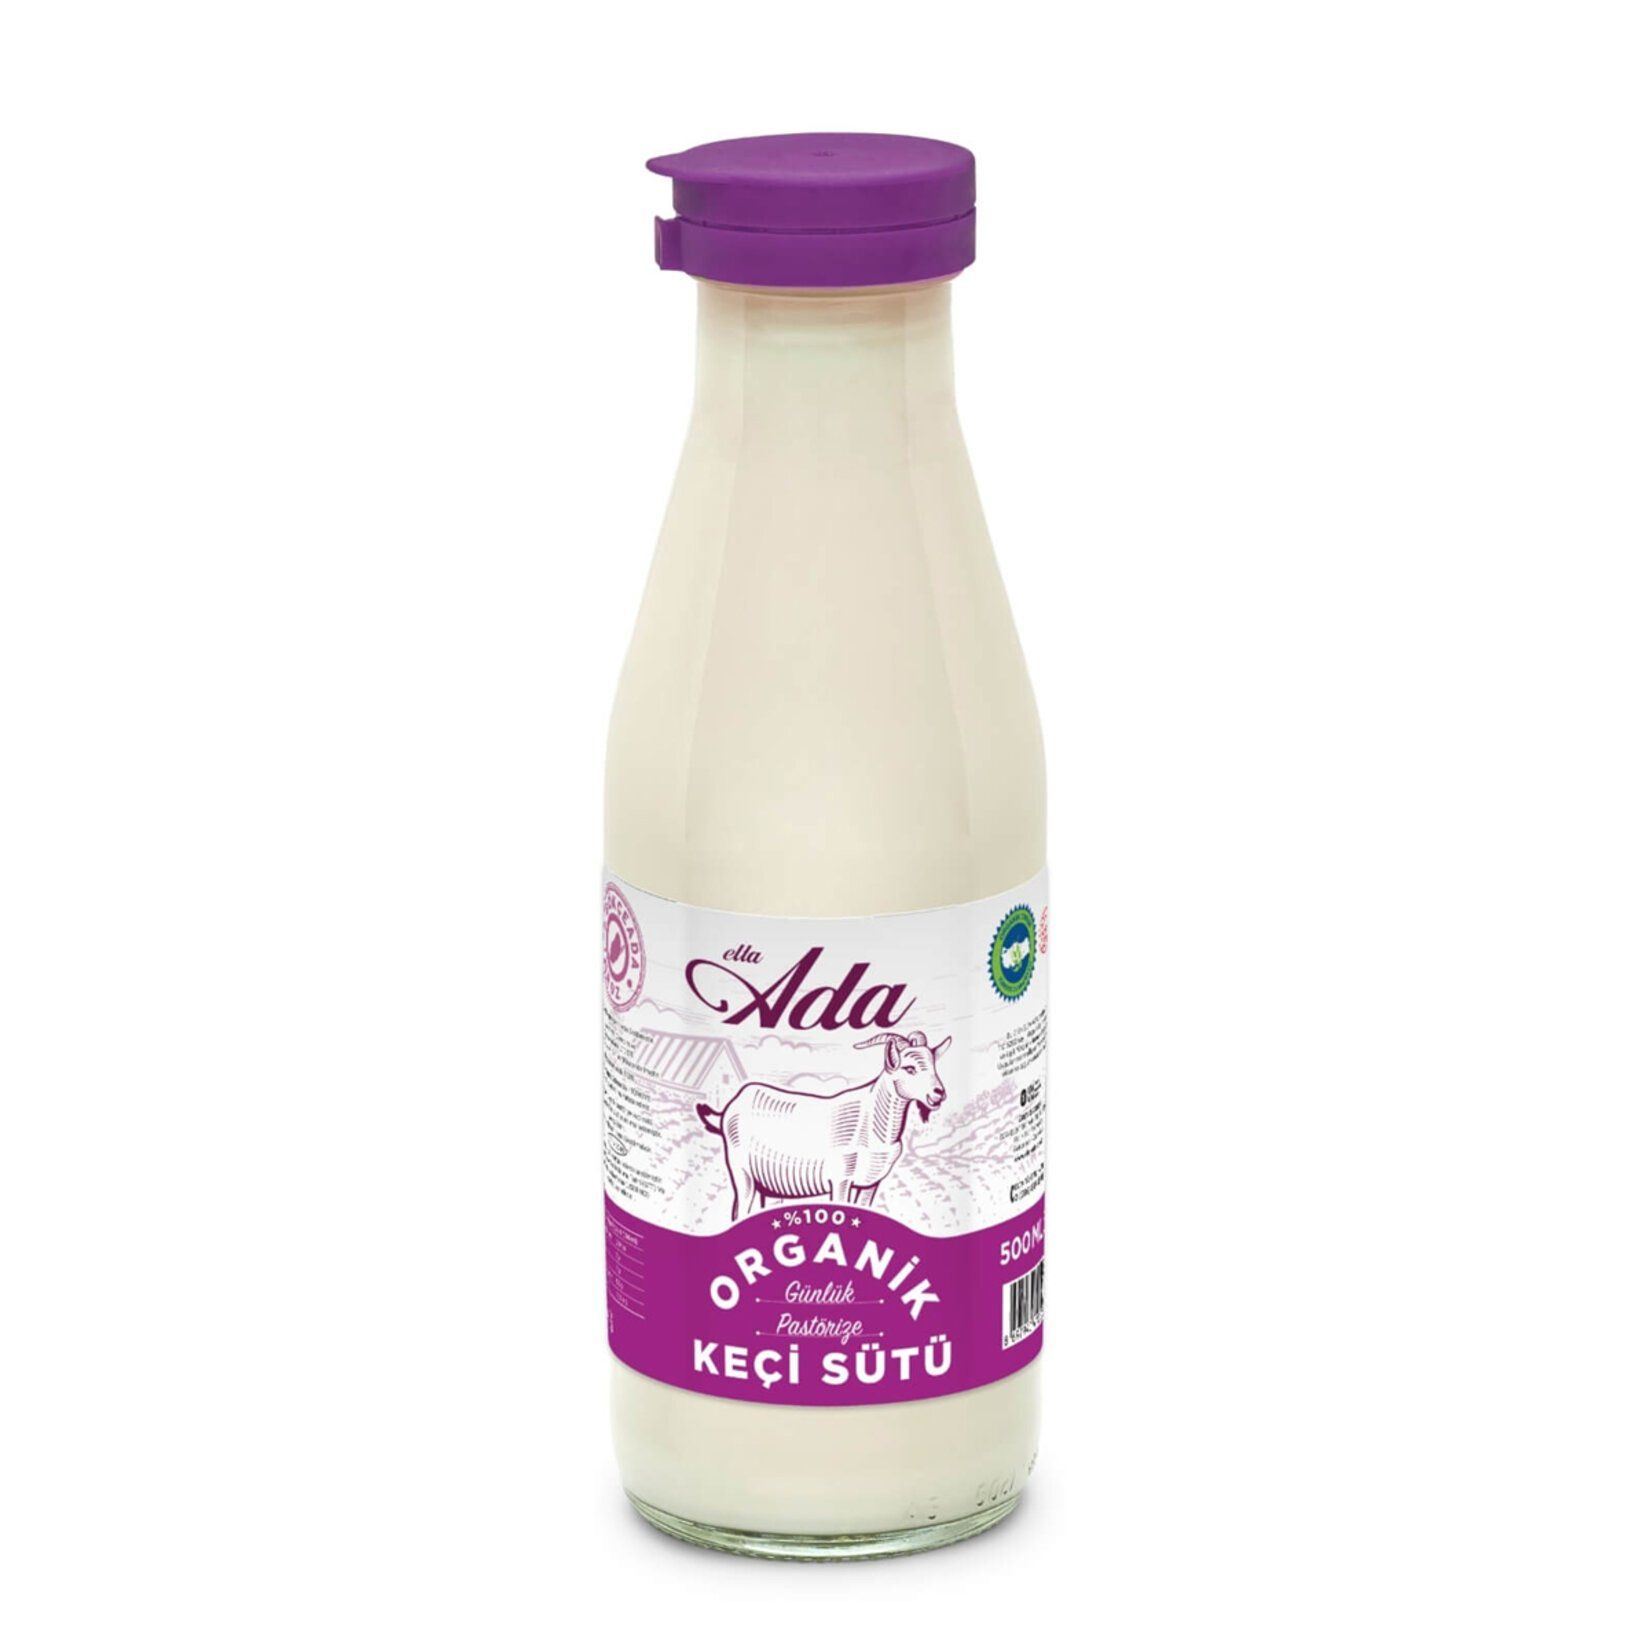 Elta Ada Organik Pastorize Keçi Sütü, 1000 ml